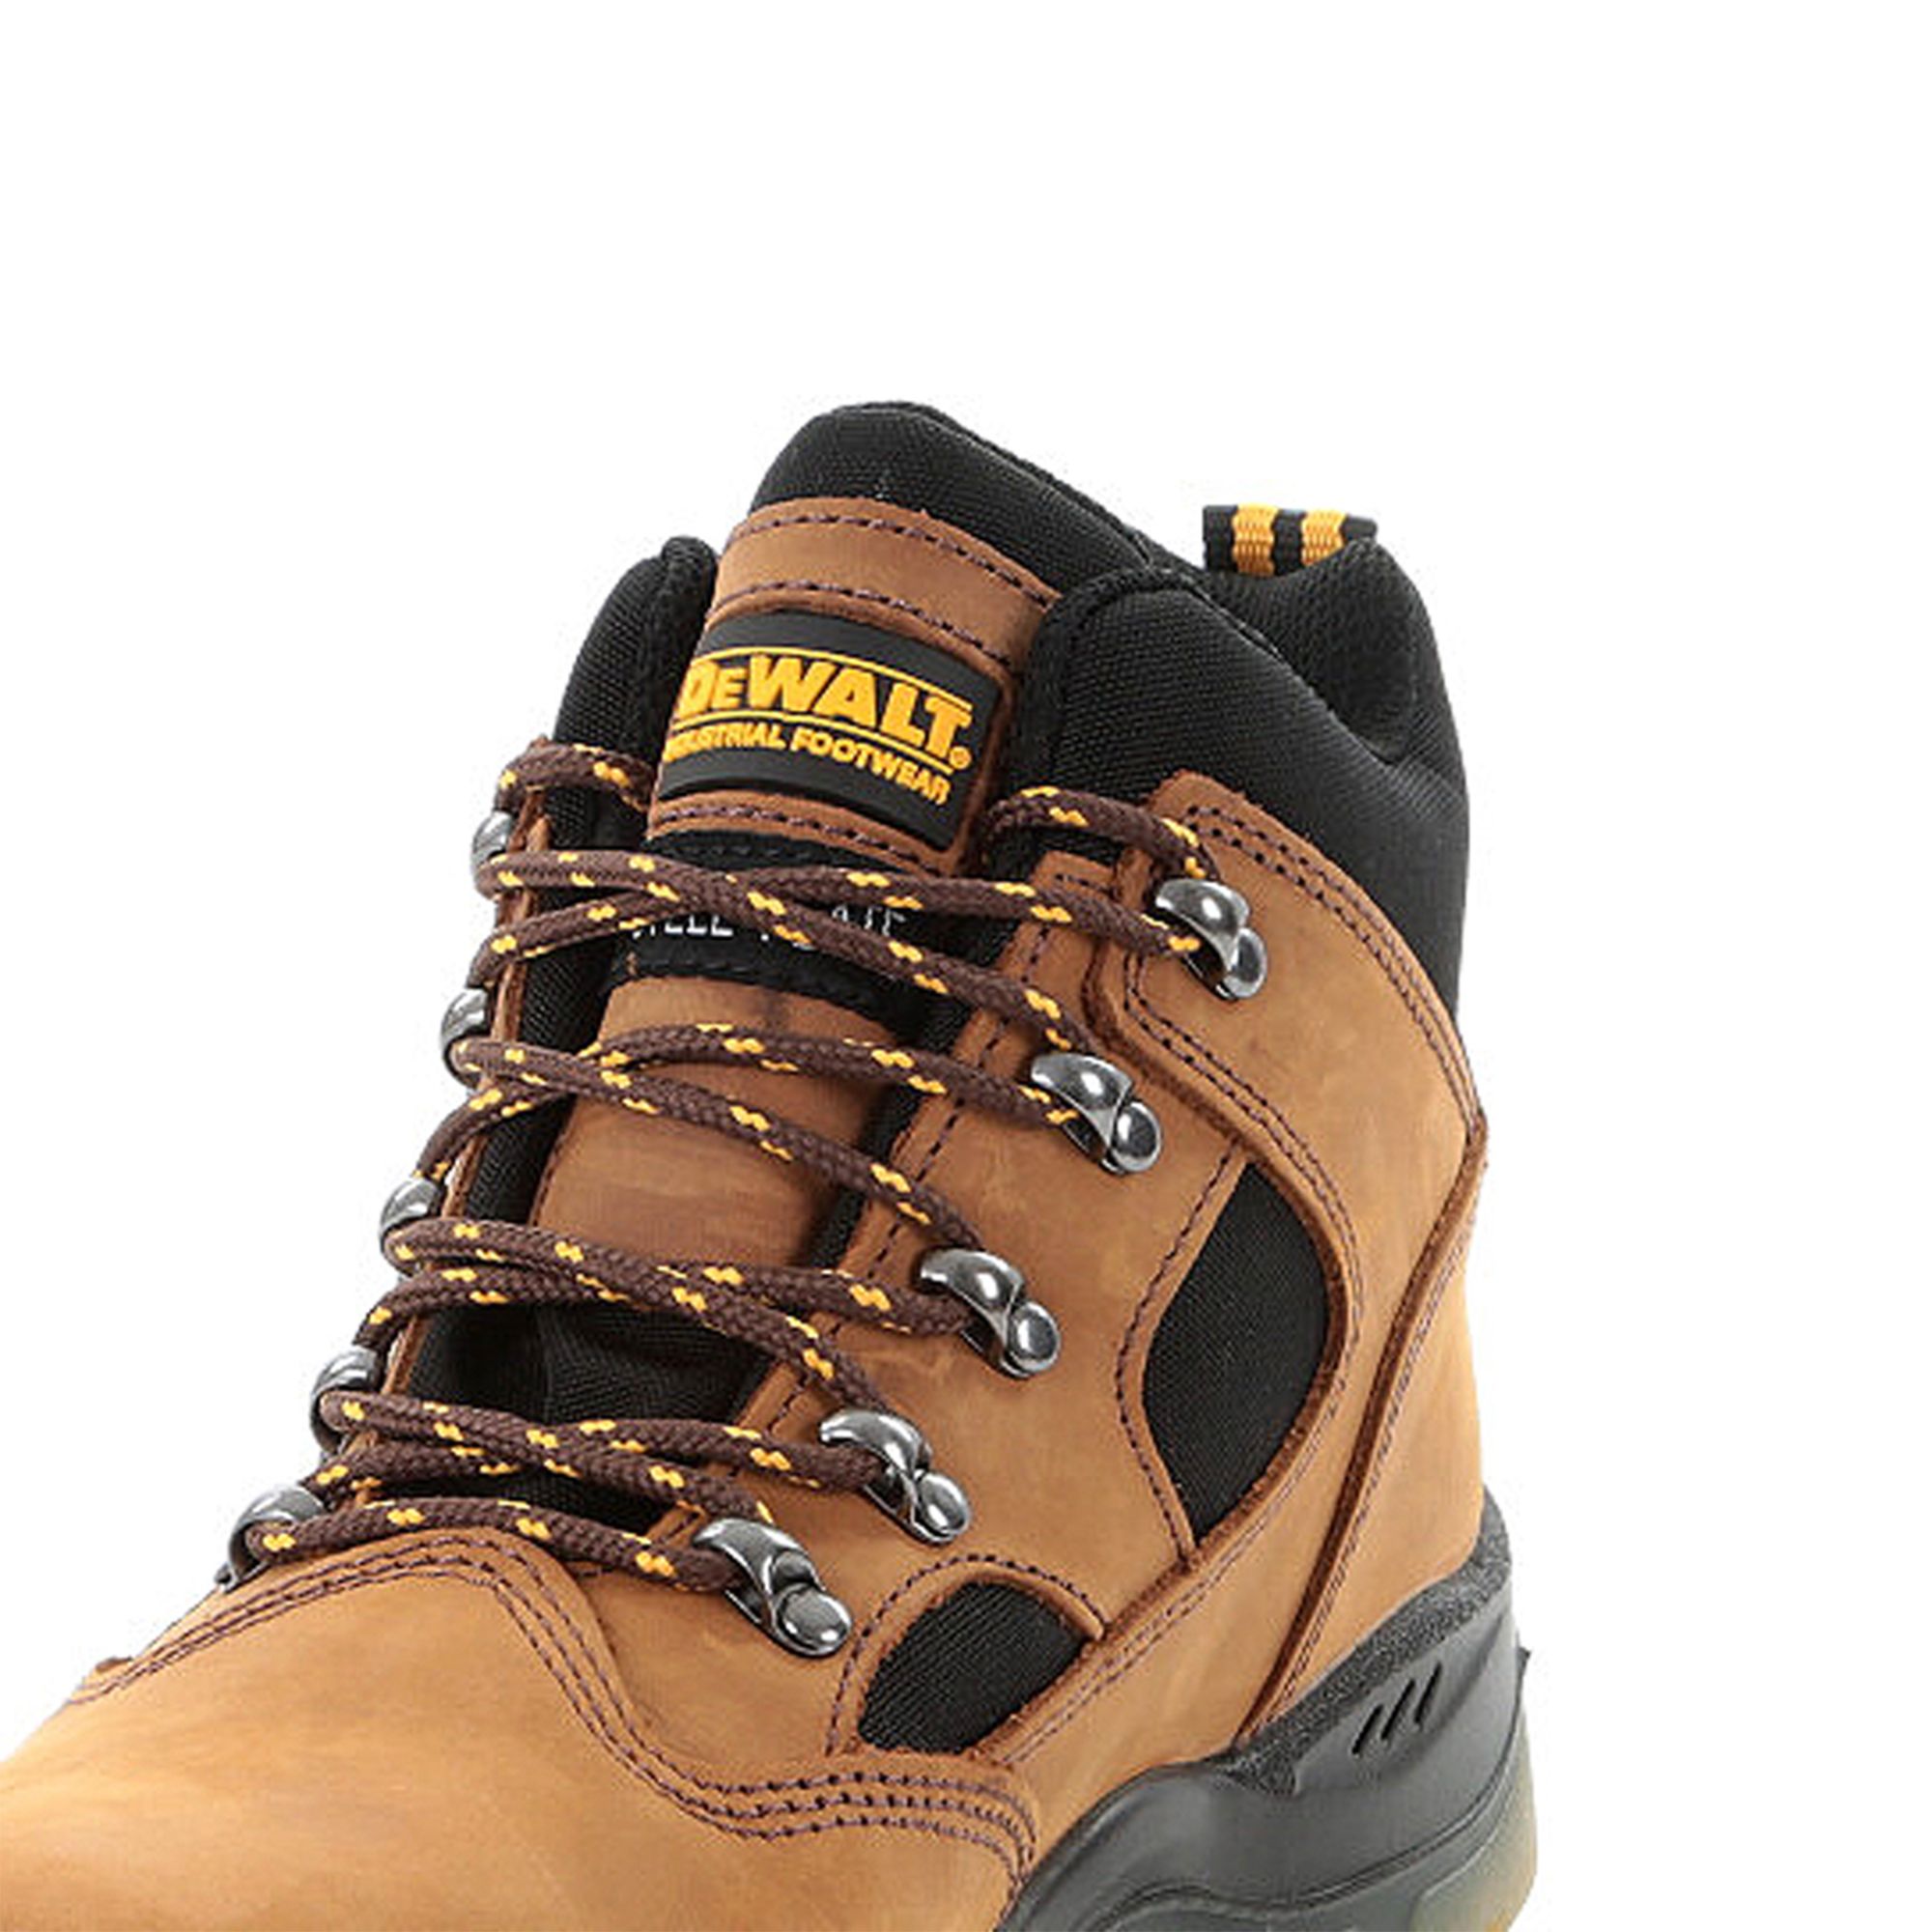 DeWalt Challenger Men's Brown Safety boots, Size 12